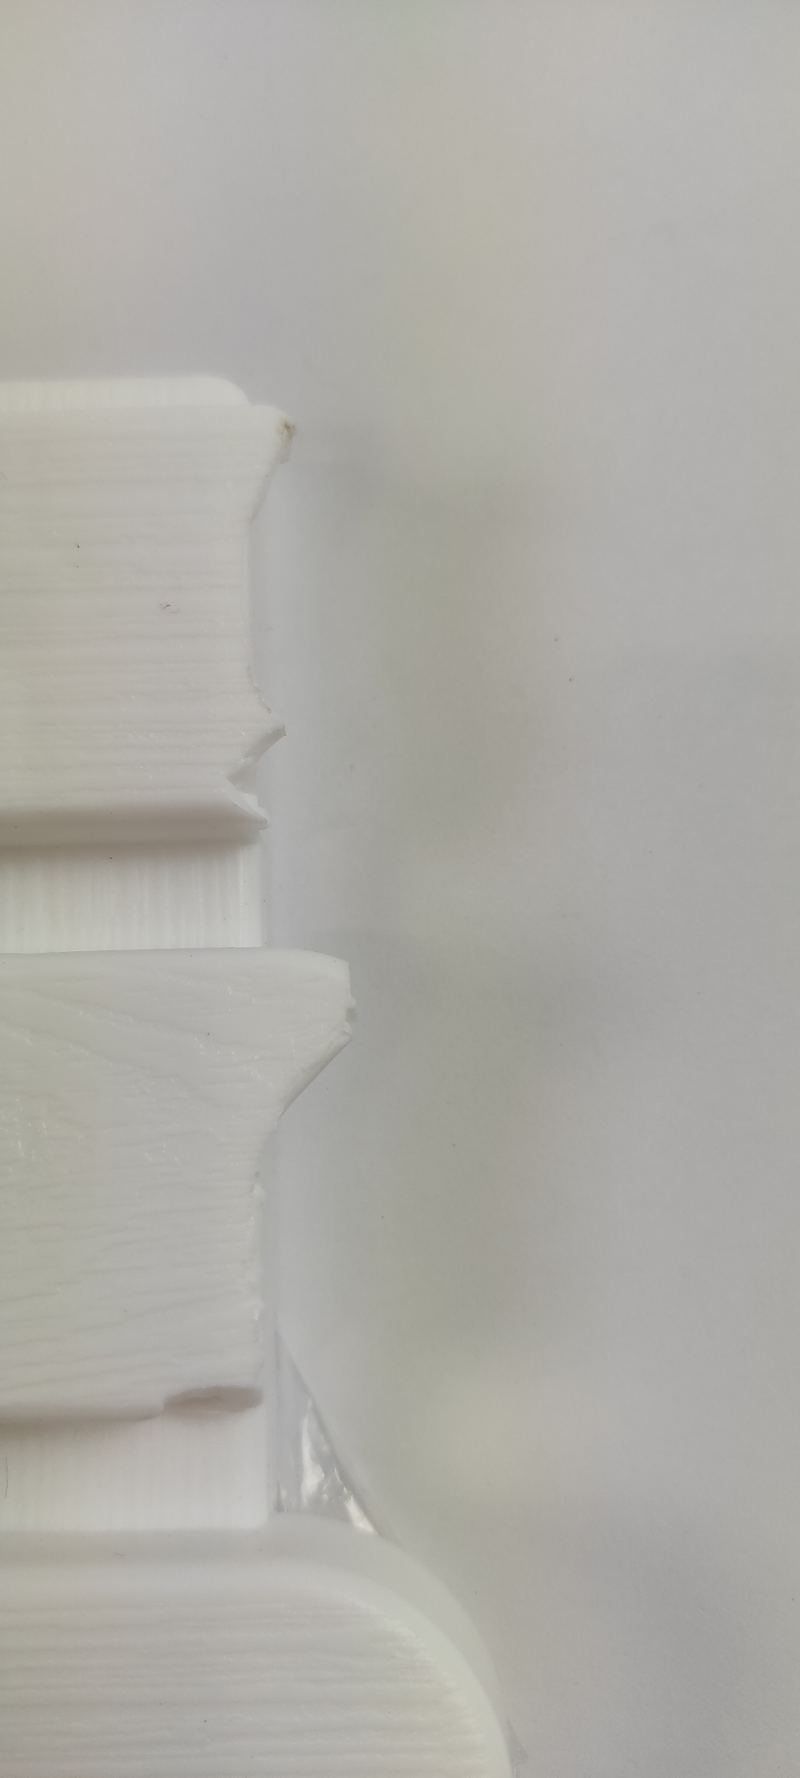 OUTLET Podkładka antypoślizgowa do łazienki, prostokątna mata do wanny lub brodzika - 50 x 80 cm, WENKO